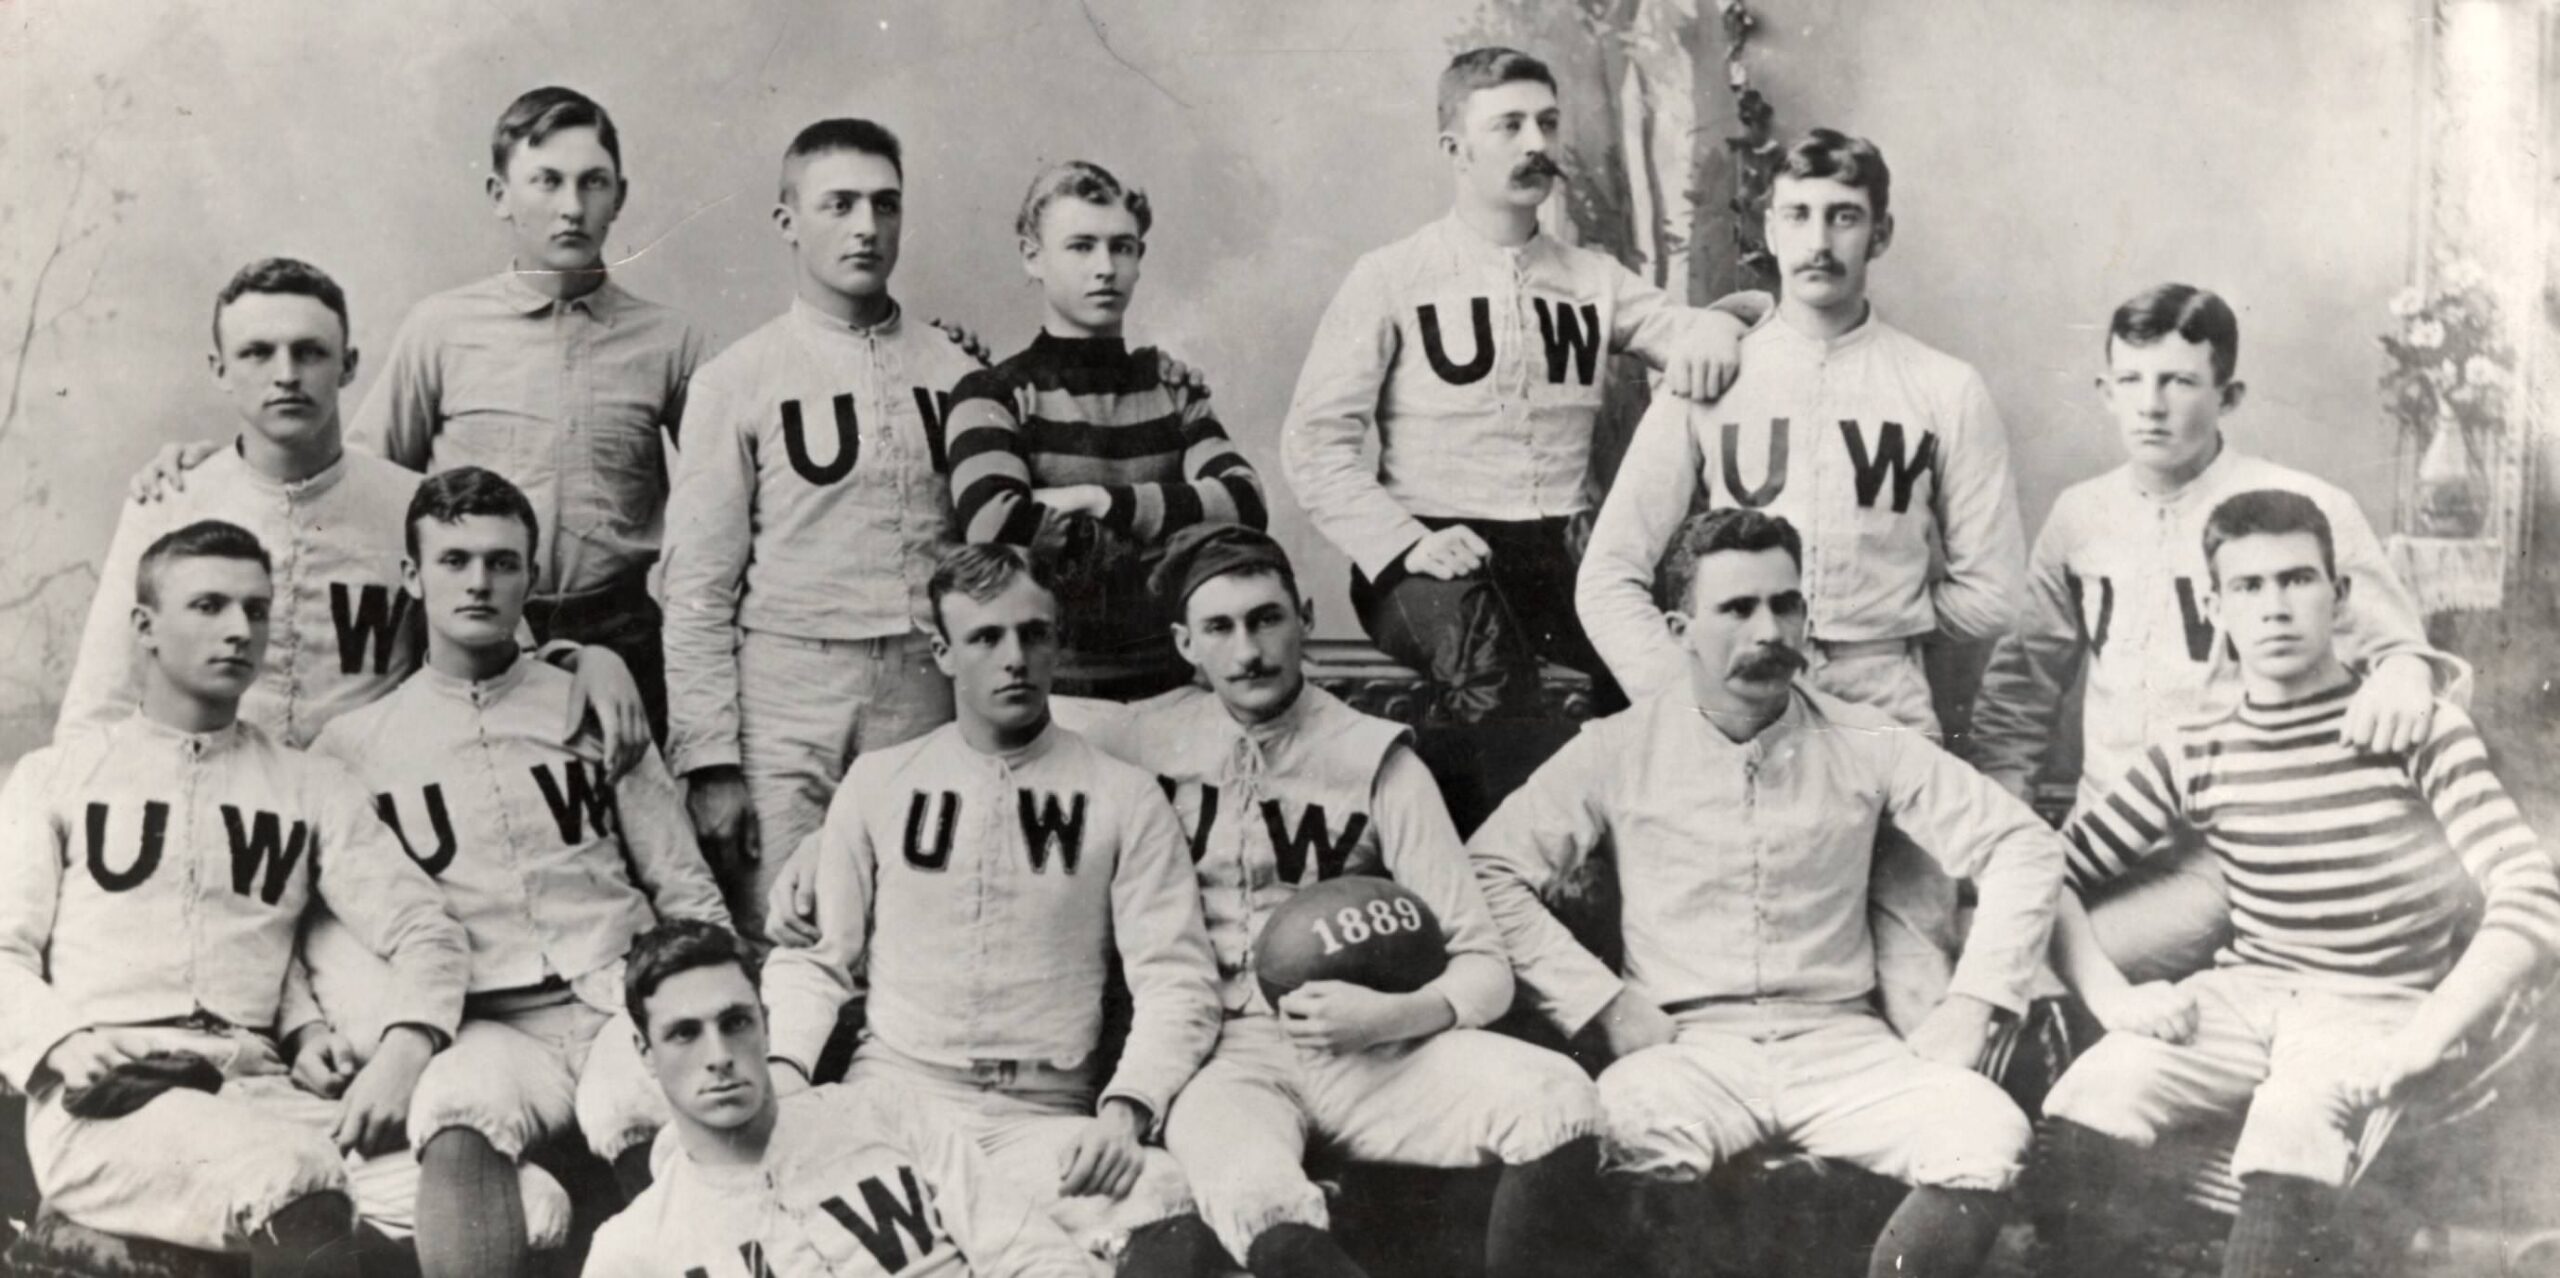 UW Football Team, 1889